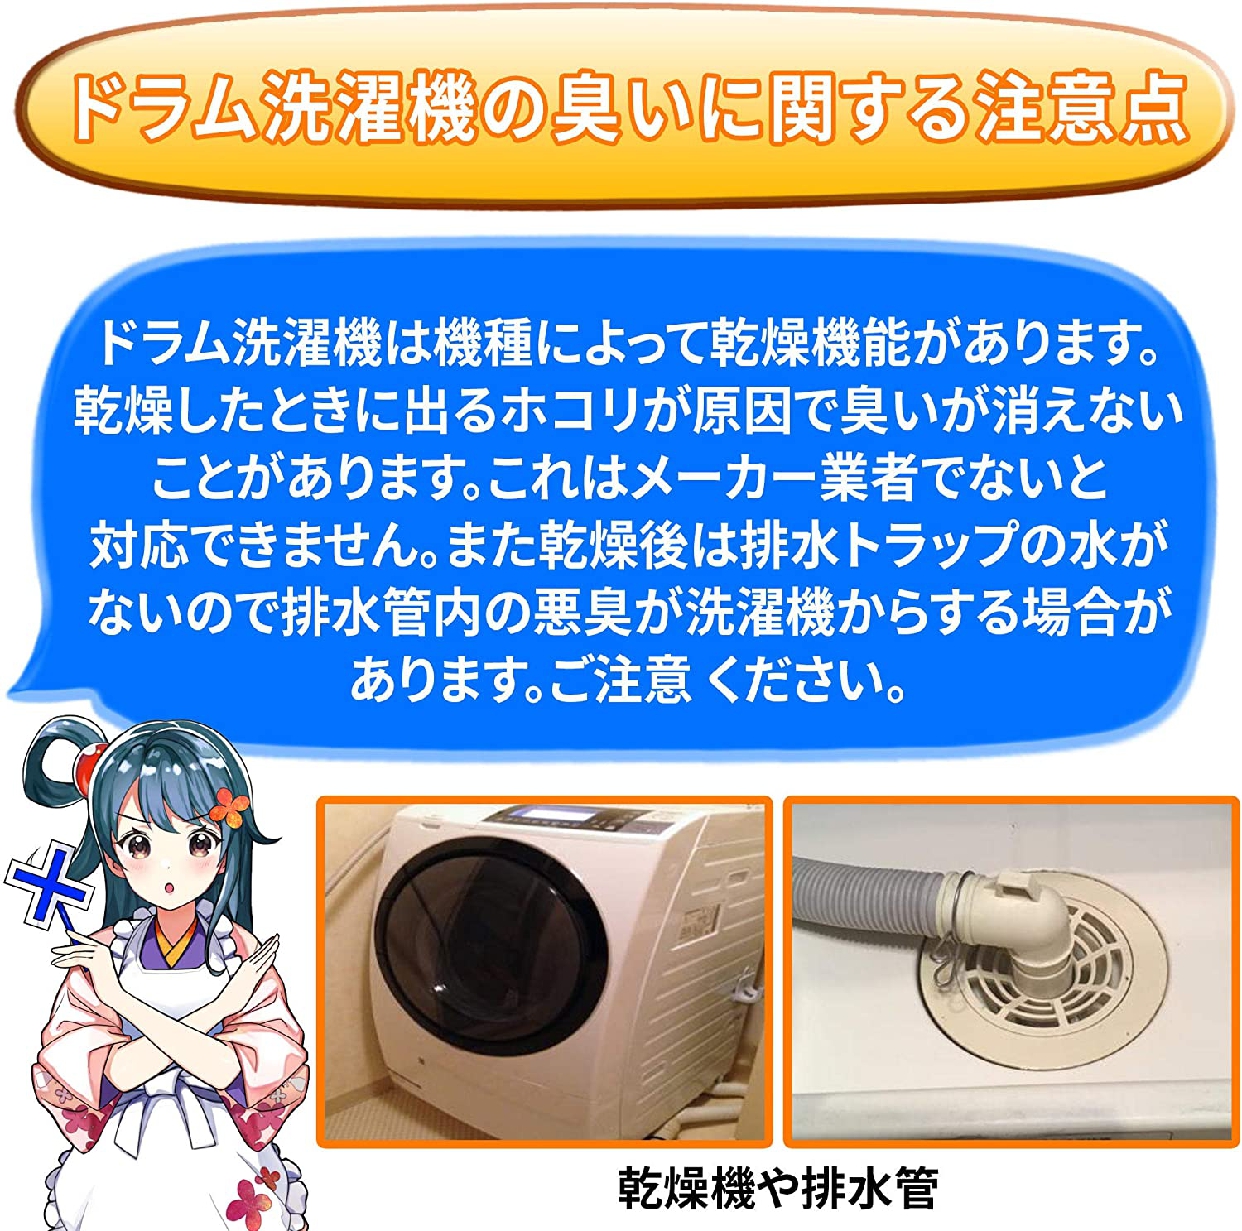 純閃堂(JUNSEIDO) カビ取り侍 洗濯槽用の商品画像サムネ7 